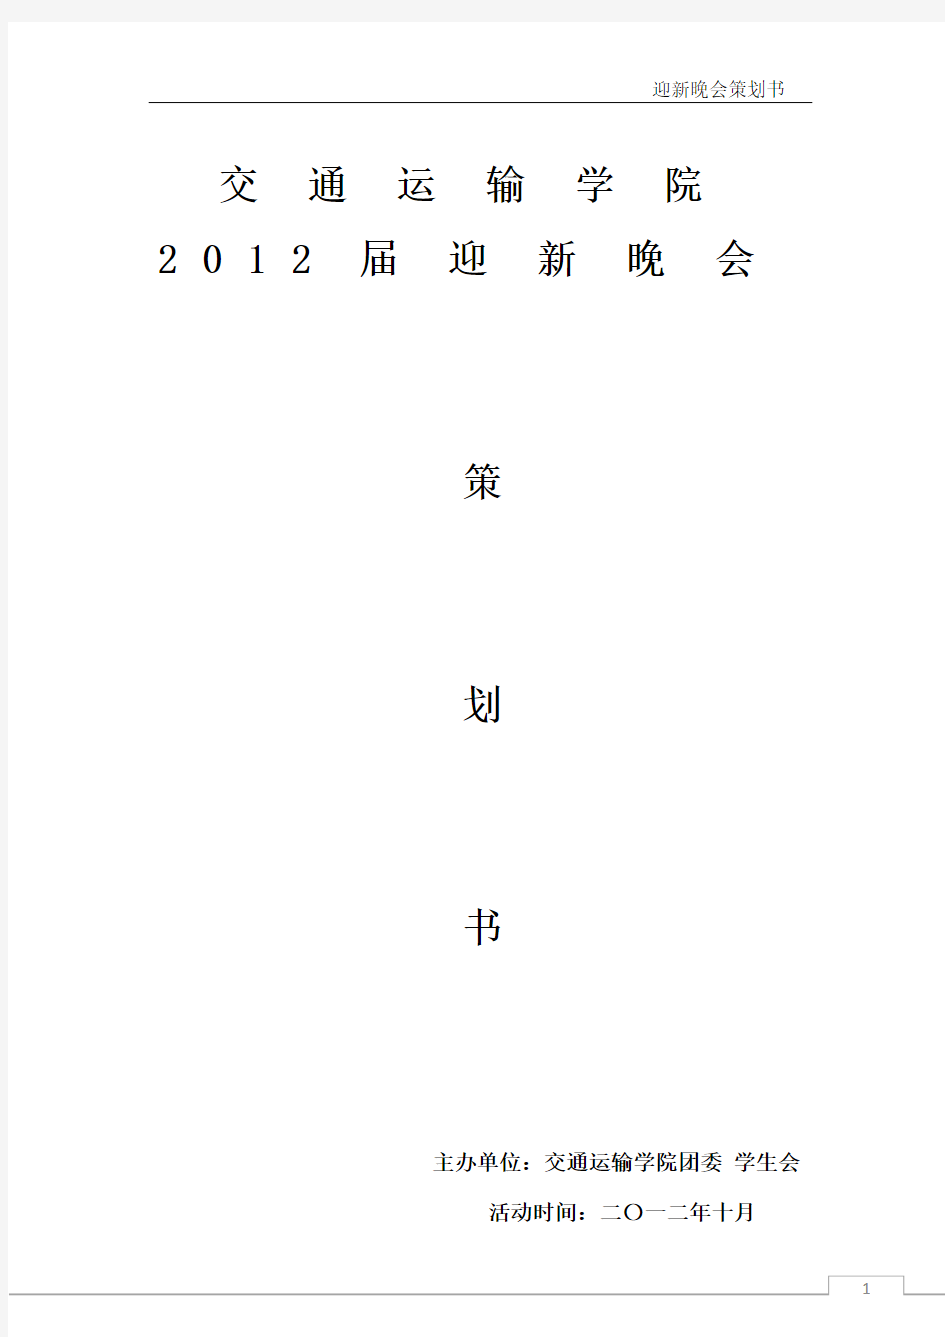 2012迎新晚会策划书(最终版)